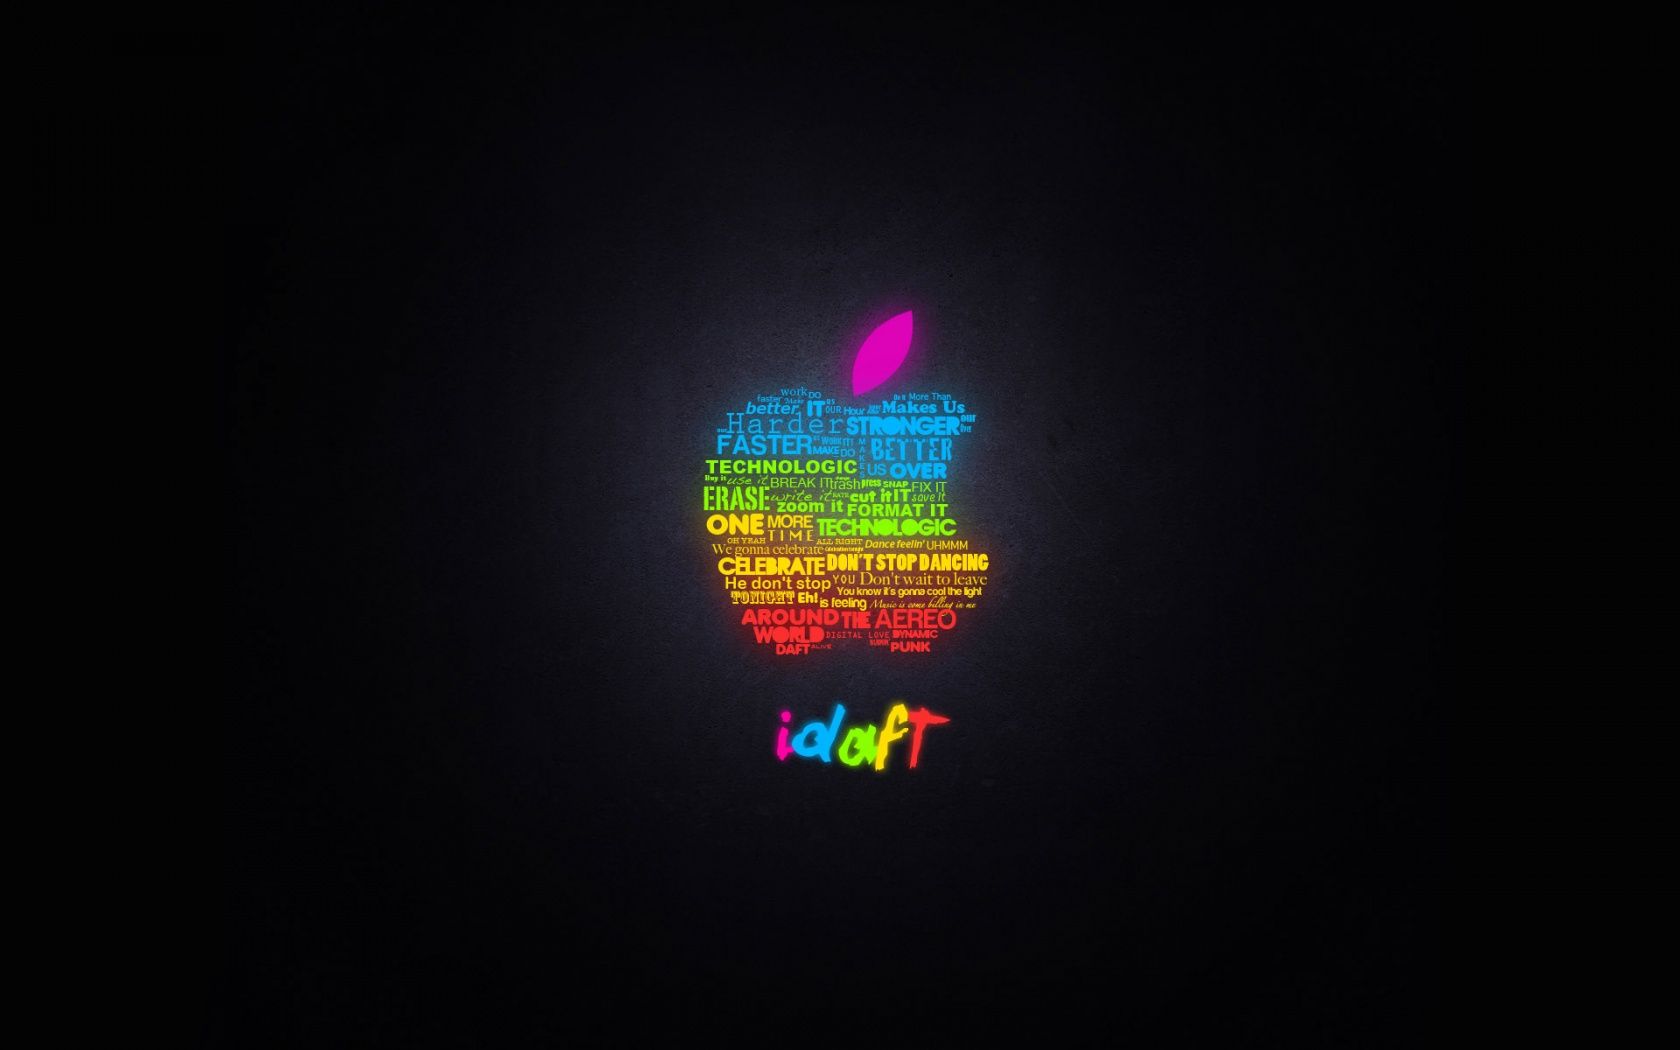 Download Cool Apple Mac Wallpaper | Full HD Wallpapers